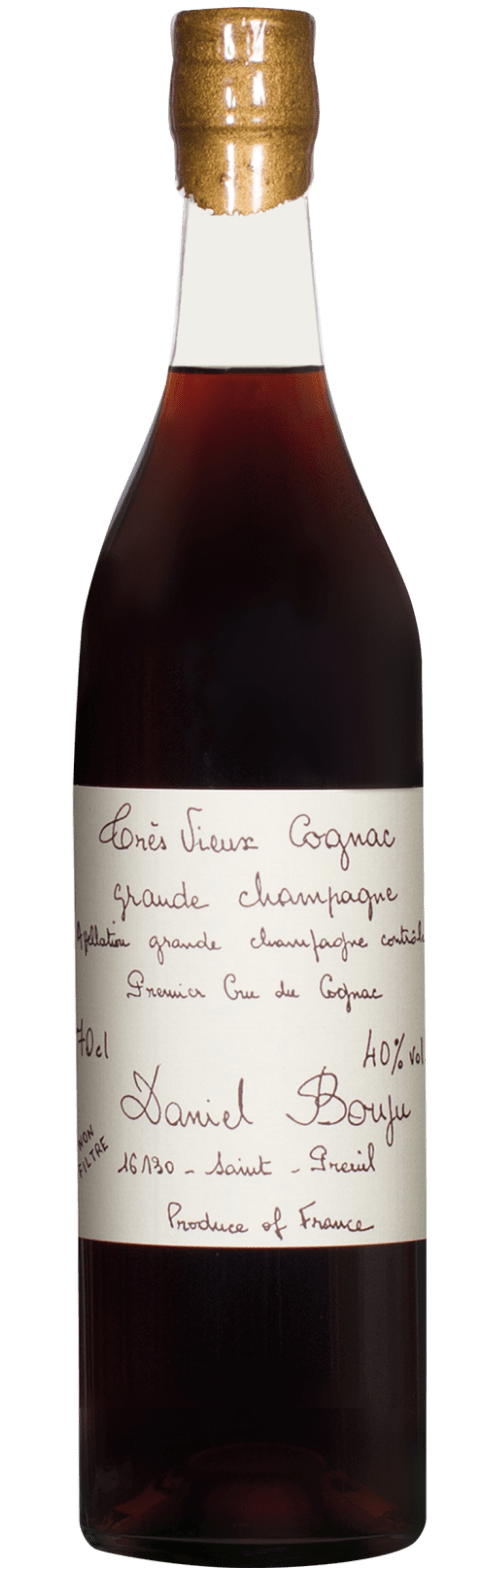 Extra Blanc Champagne Premier Cru A.O.C. Daniel Bouju